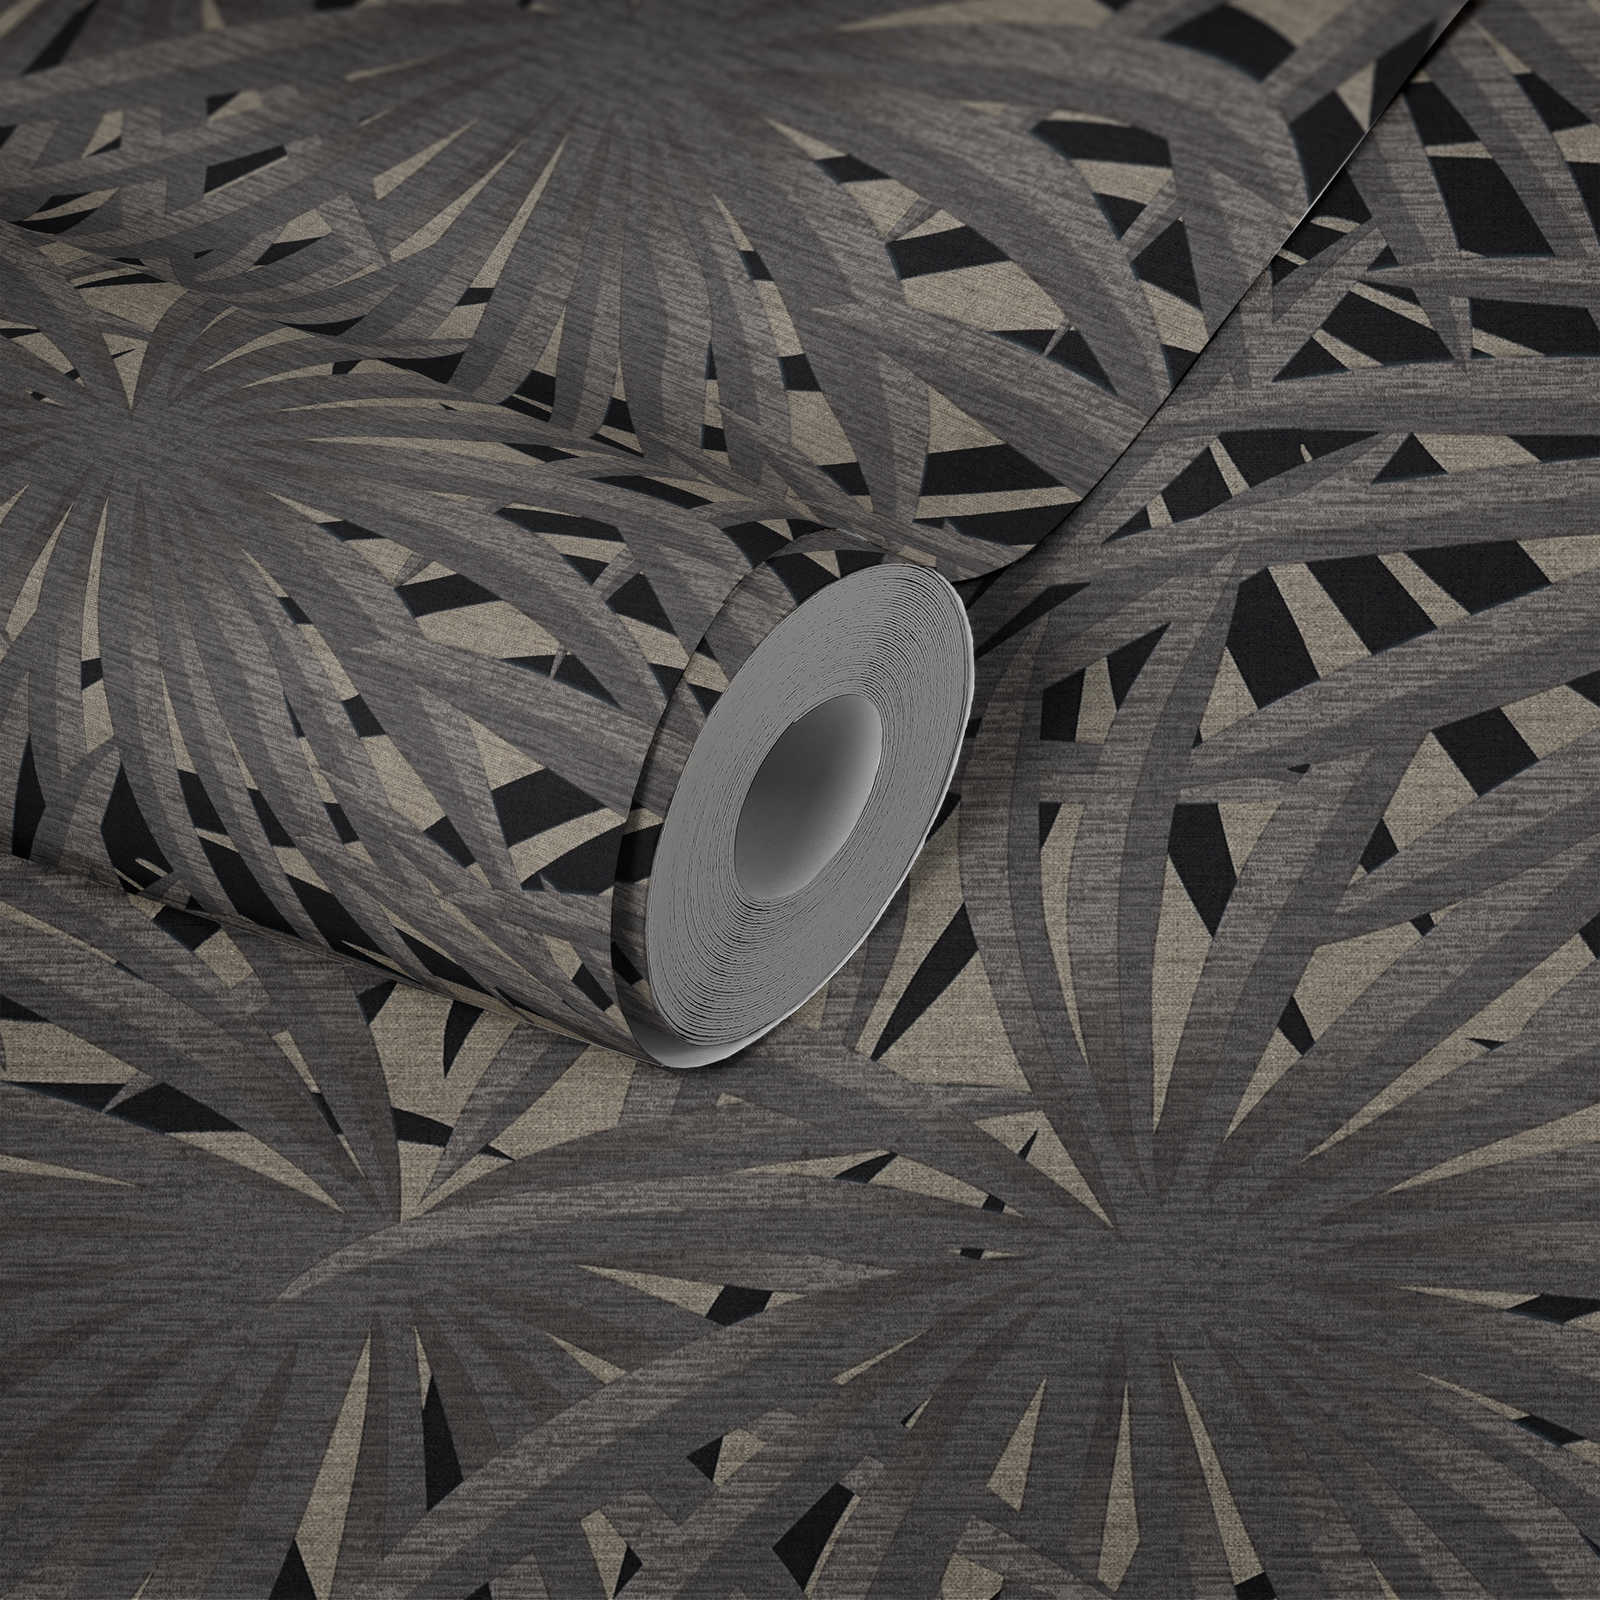             Papel pintado no tejido de diseño selvático con efecto metálico - gris, metálico, negro
        